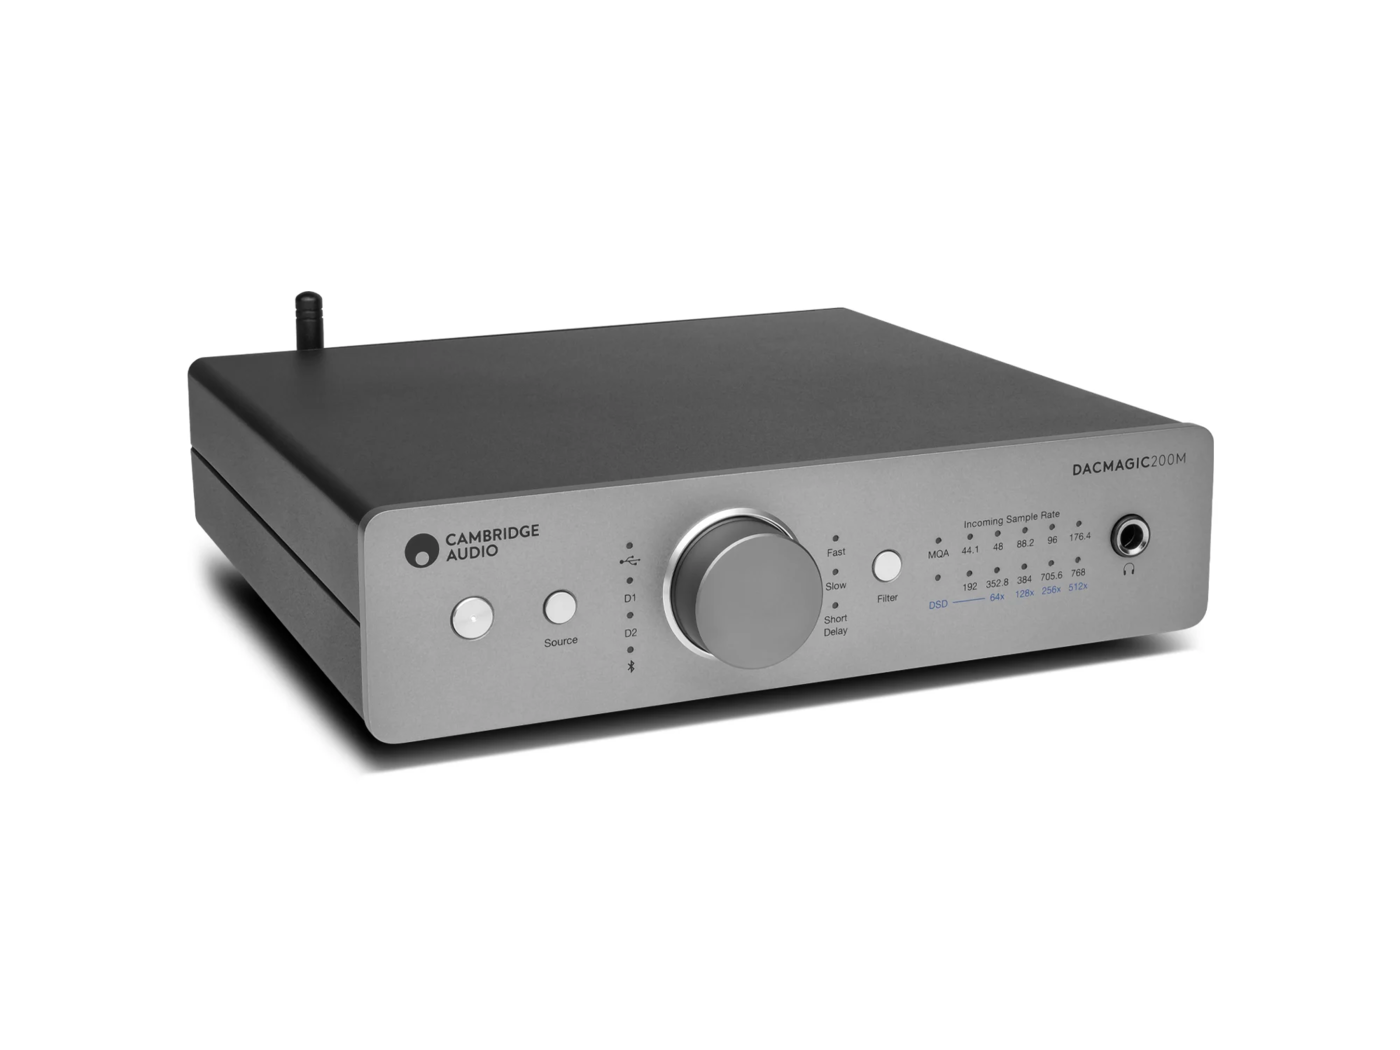 Cambridge Audio DacMagic 200M DA Converter